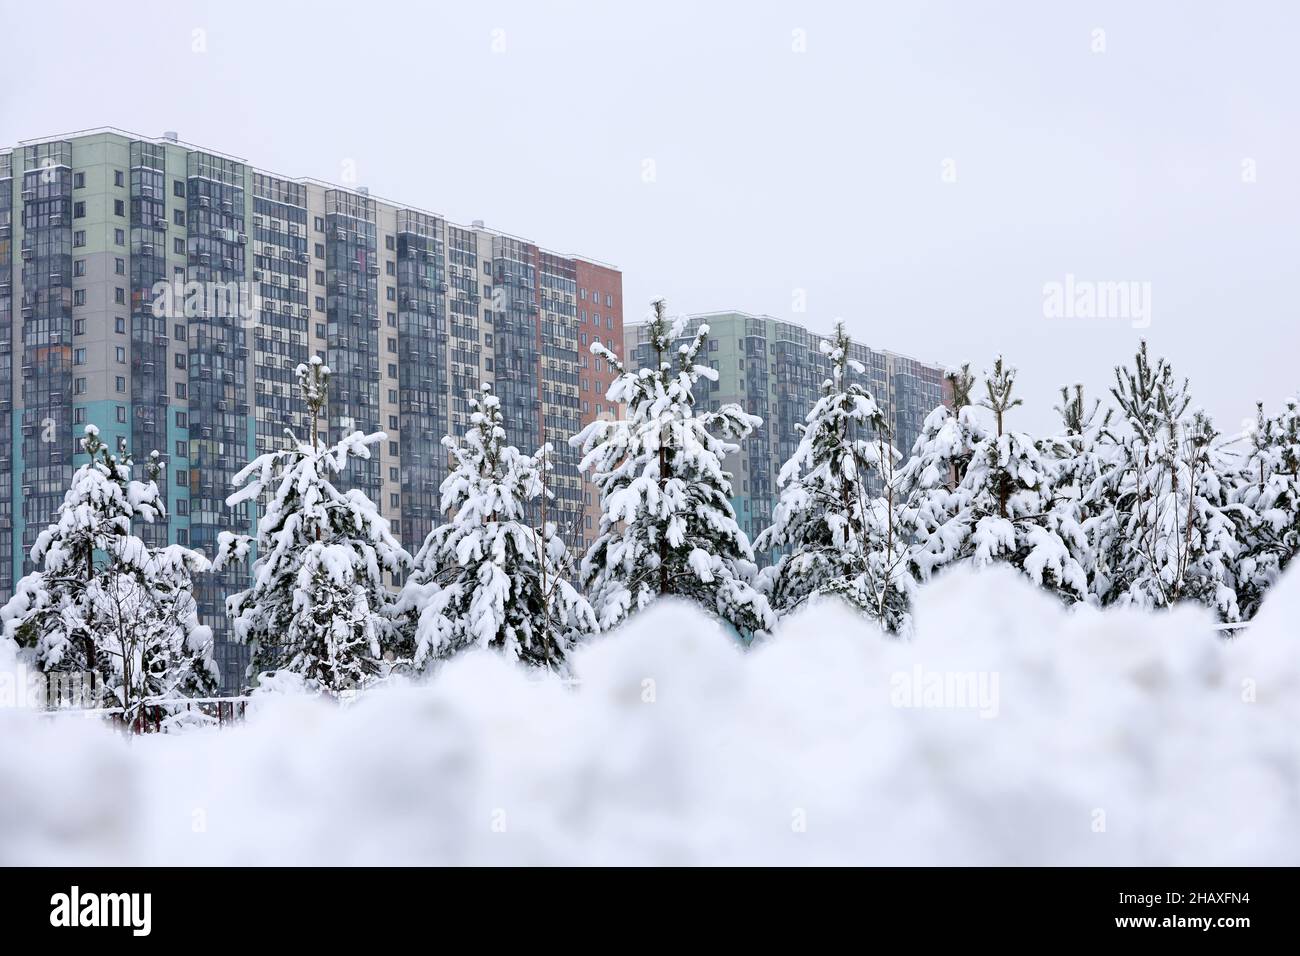 Quartier résidentiel dans la ville d'hiver, vue sur les pins couverts de neige et les immeubles d'appartements.Immobilier, choisir la maison ou louer la propriété Banque D'Images